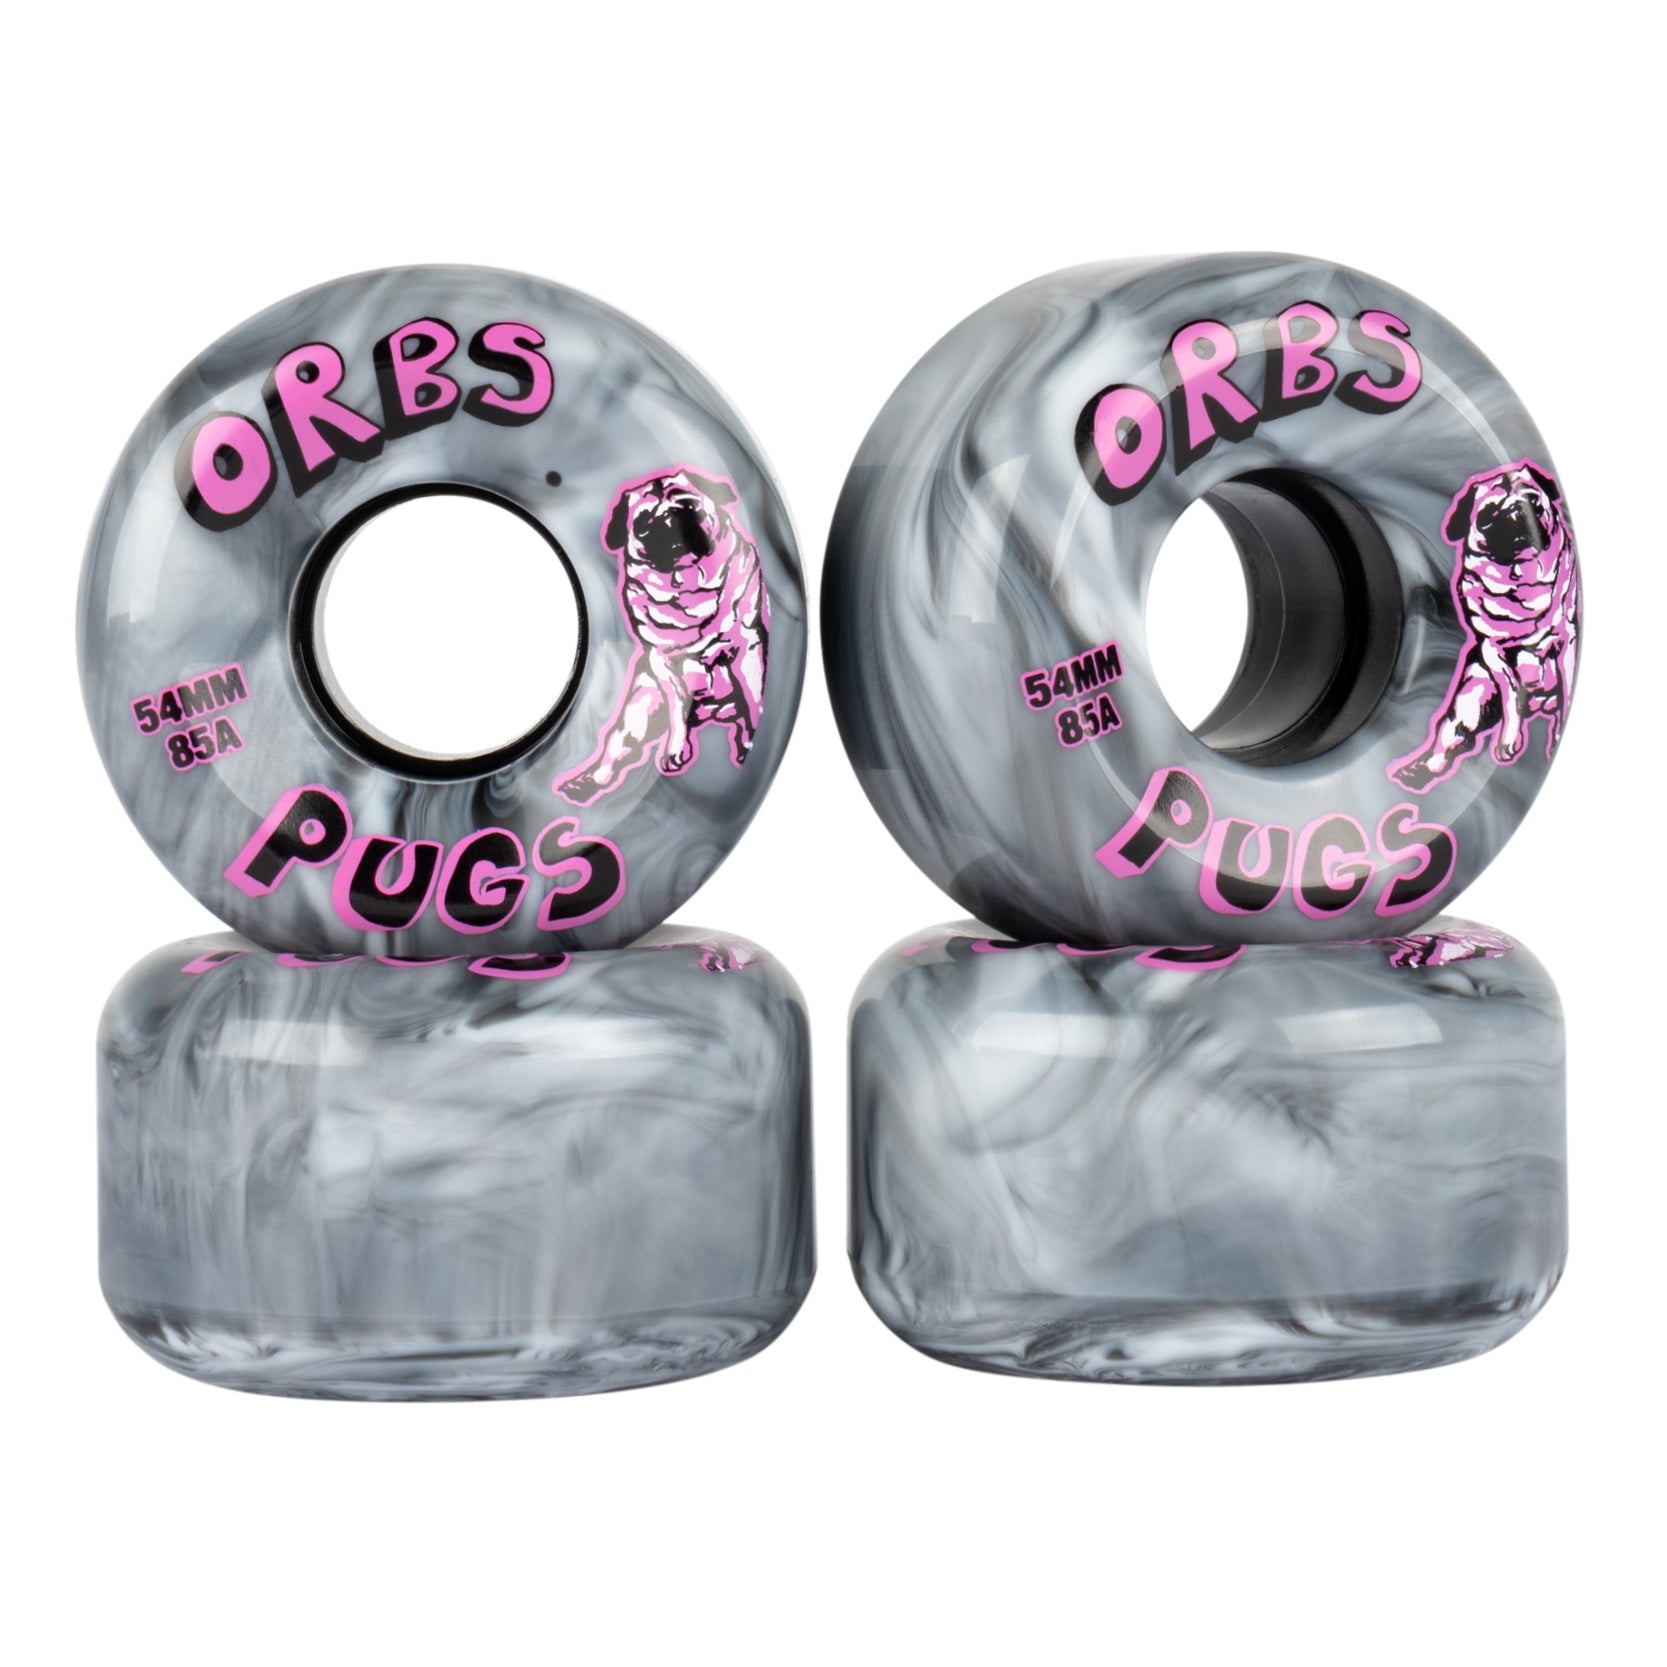 Orbs Pugs Skate Wheels - 54mm